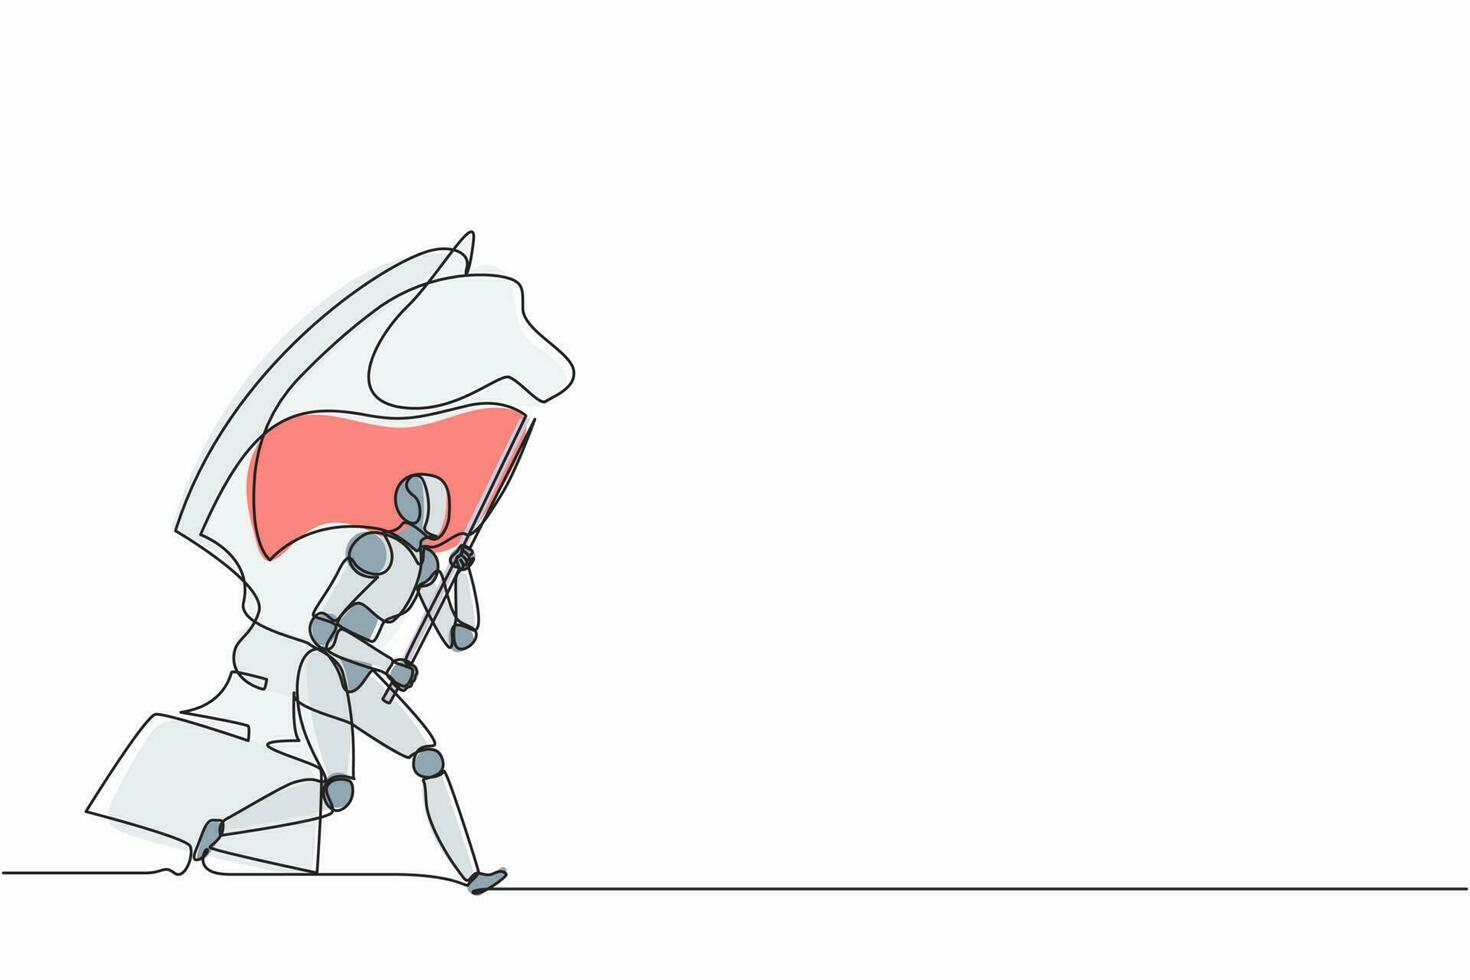 kontinuerliga en rad teckningsrobotar som springer och håller flagga bredvid stora hästriddarschack. humanoid robot cybernetisk organism. framtida robotutvecklingskoncept. enda linje design vektorgrafik vektor